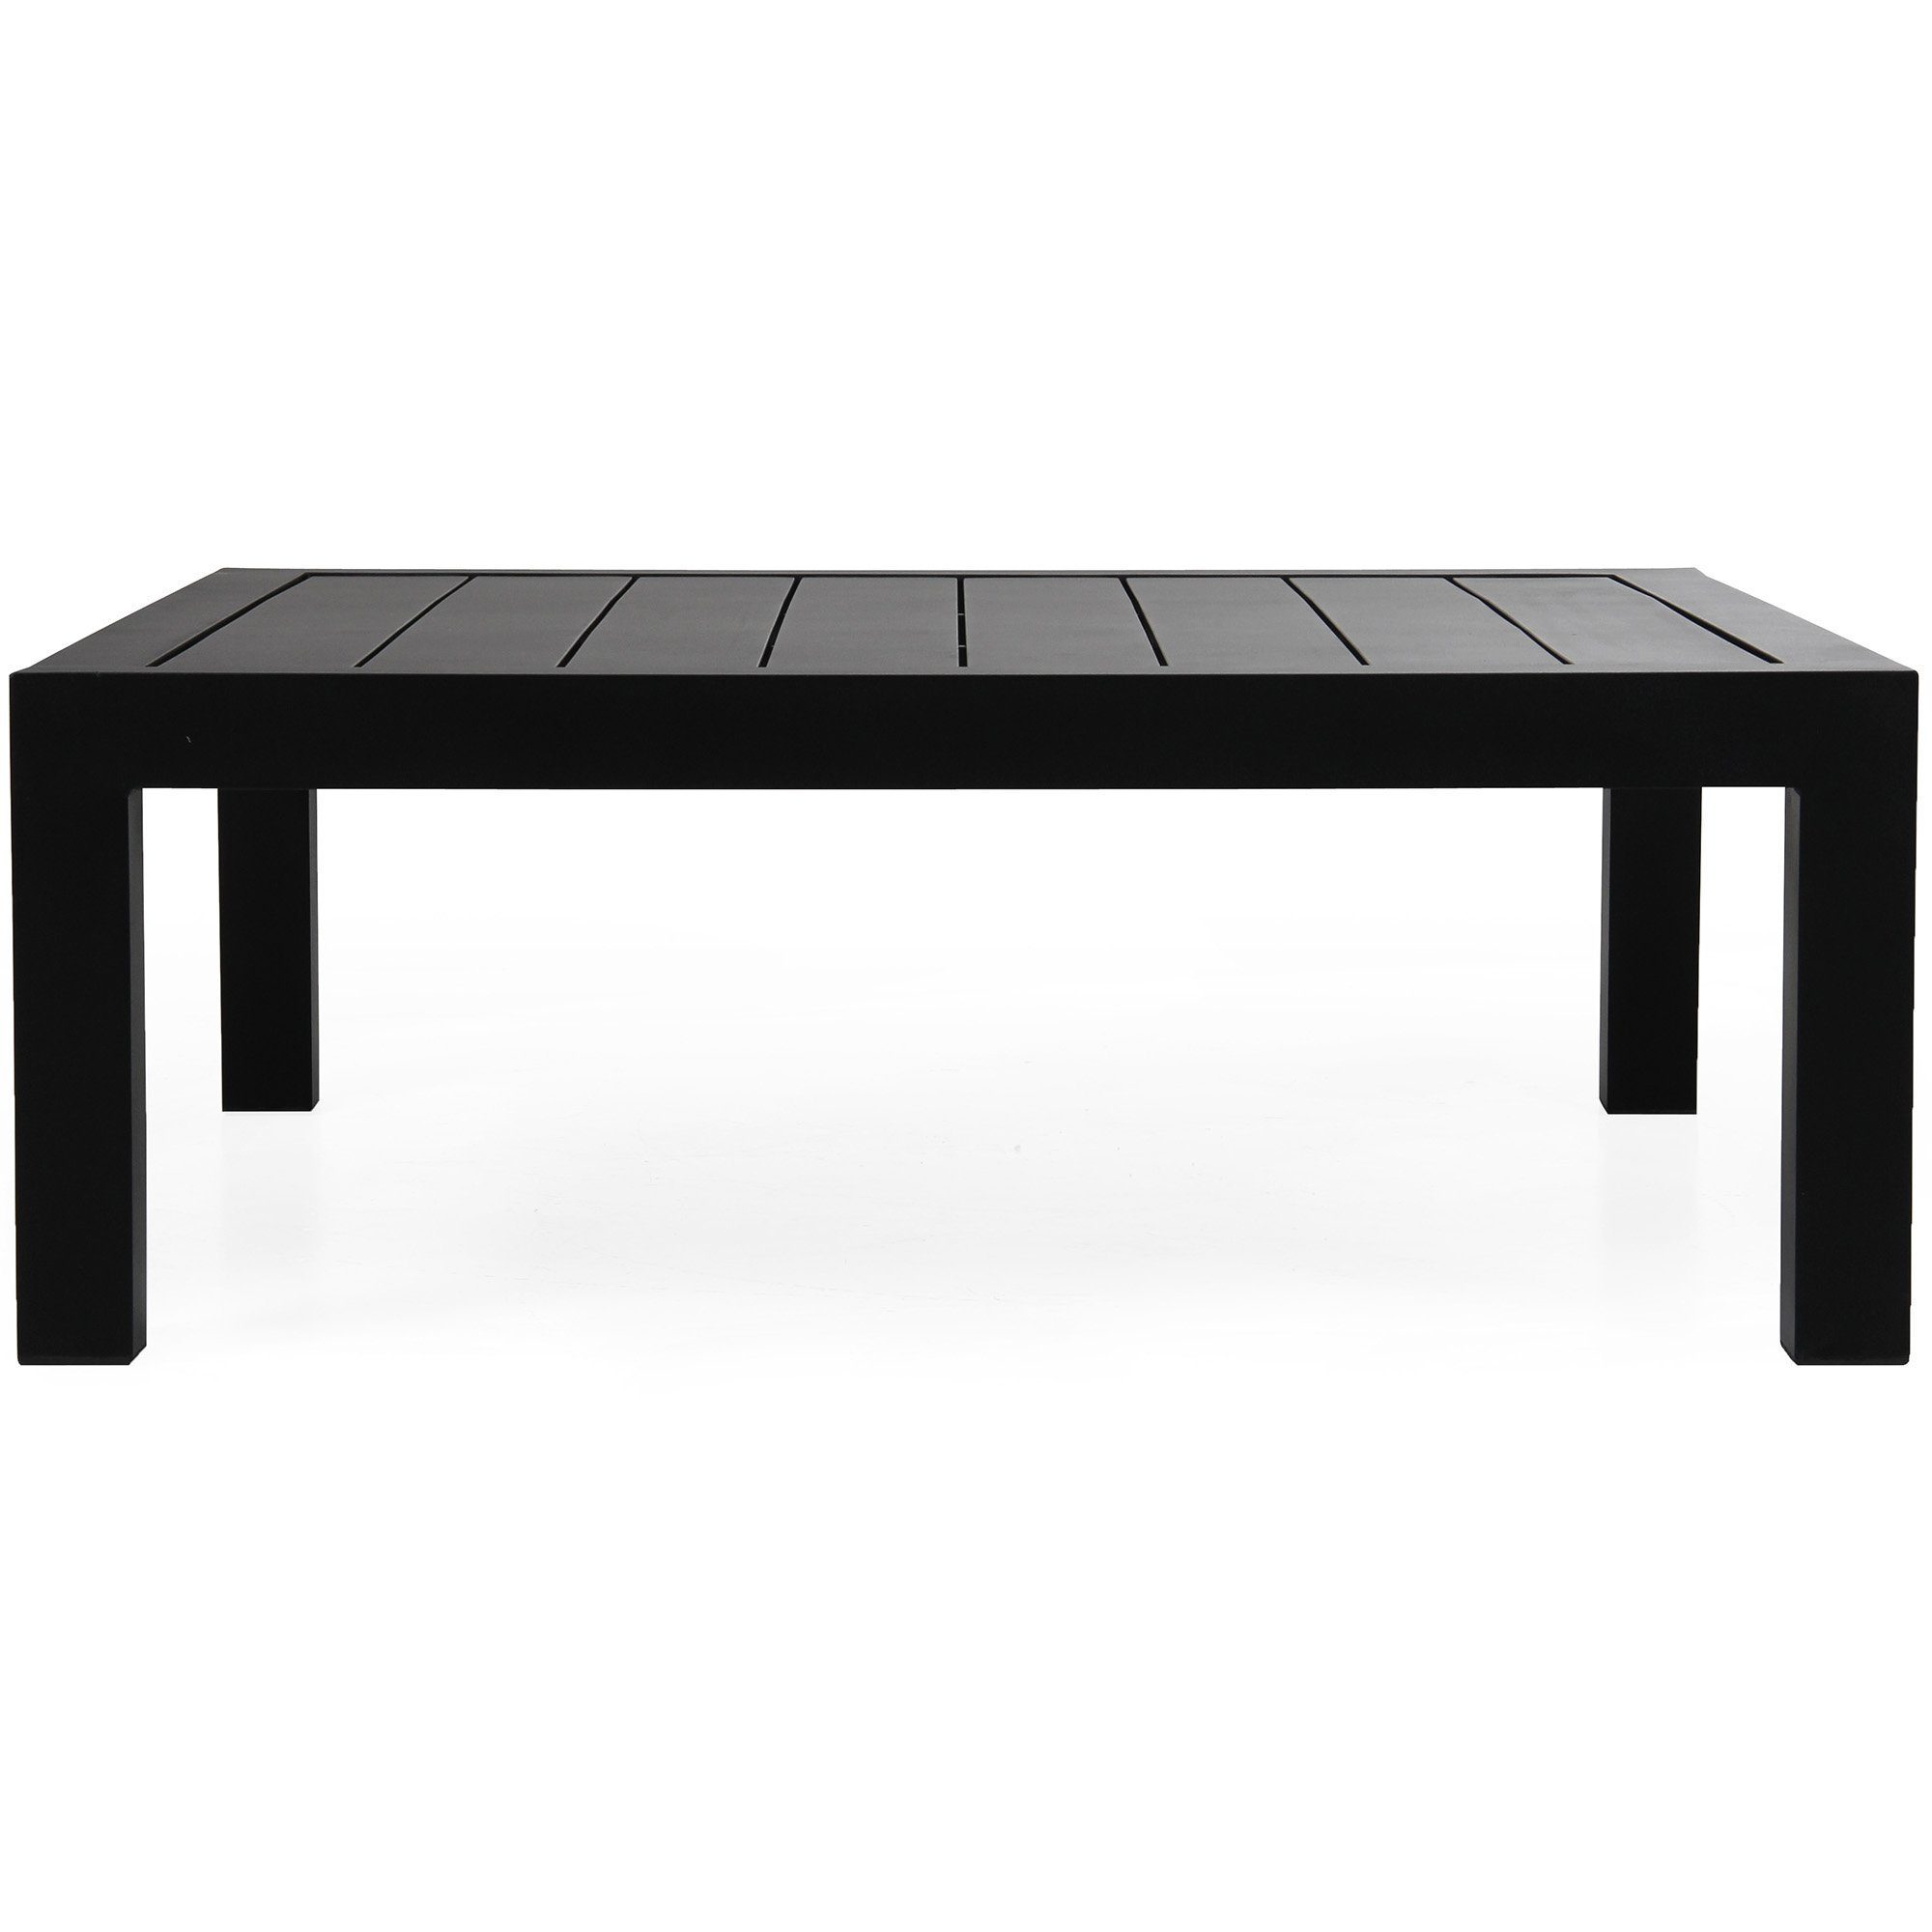 Stettler soffbord svart 112x112 cm